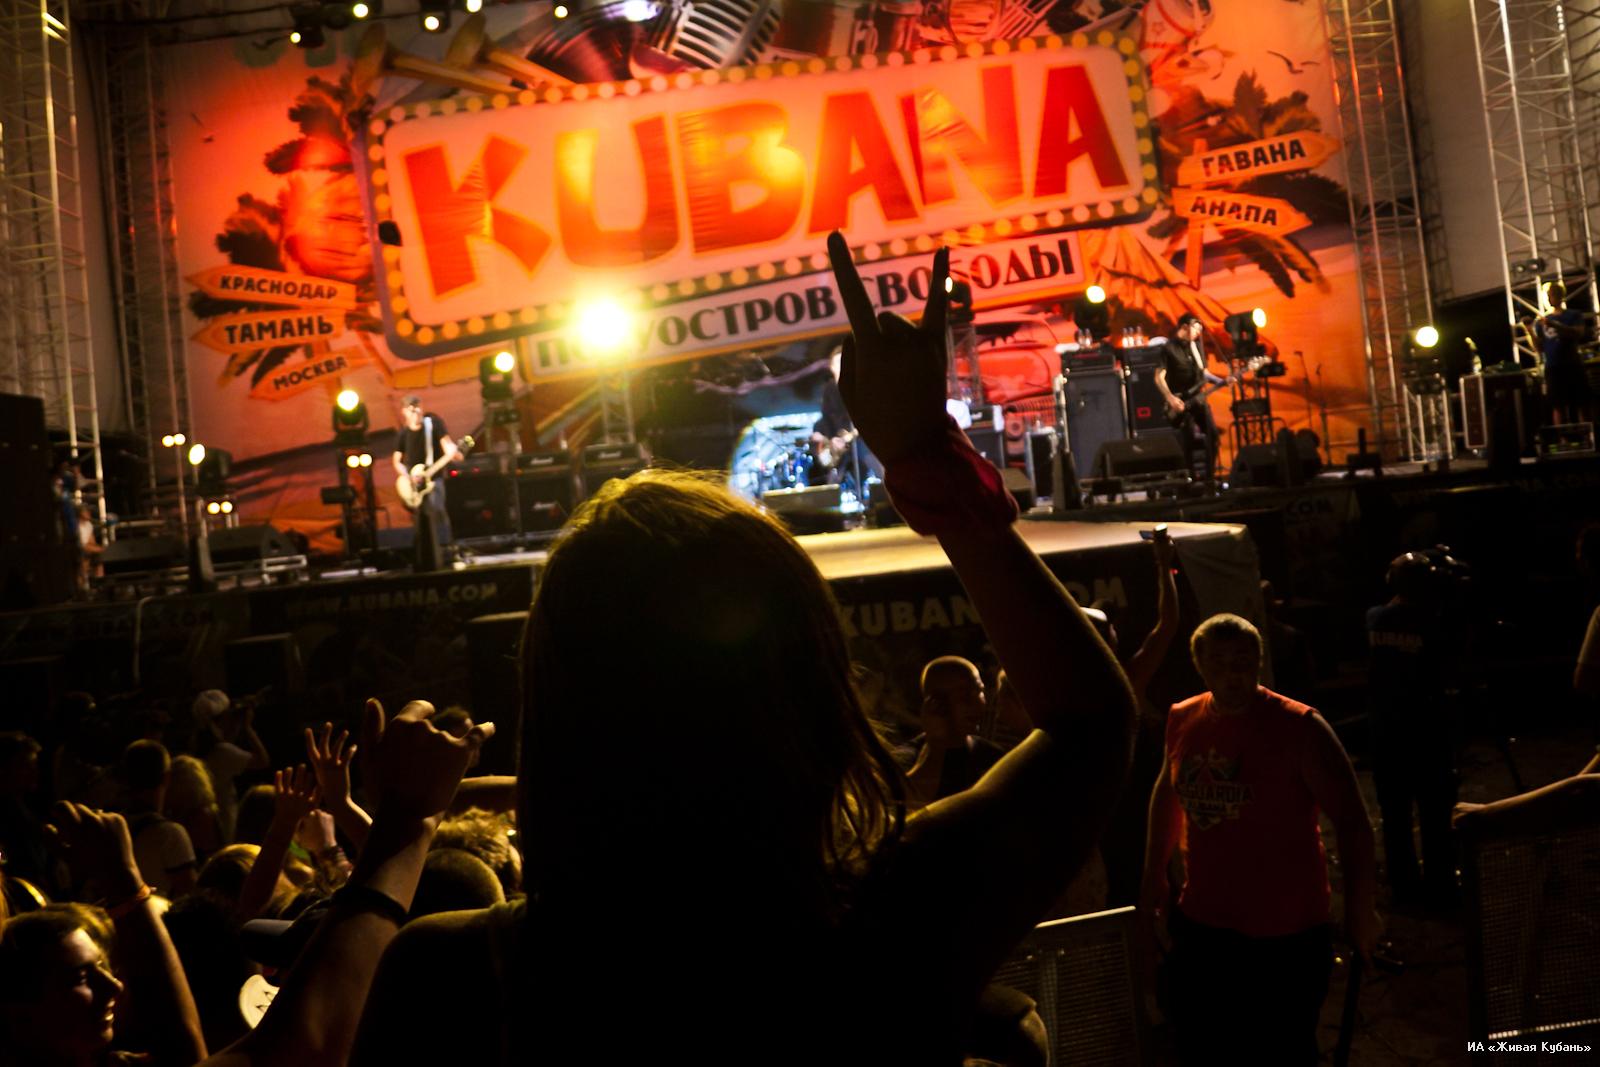 Фестиваль KUBANA переезжает в Ригу